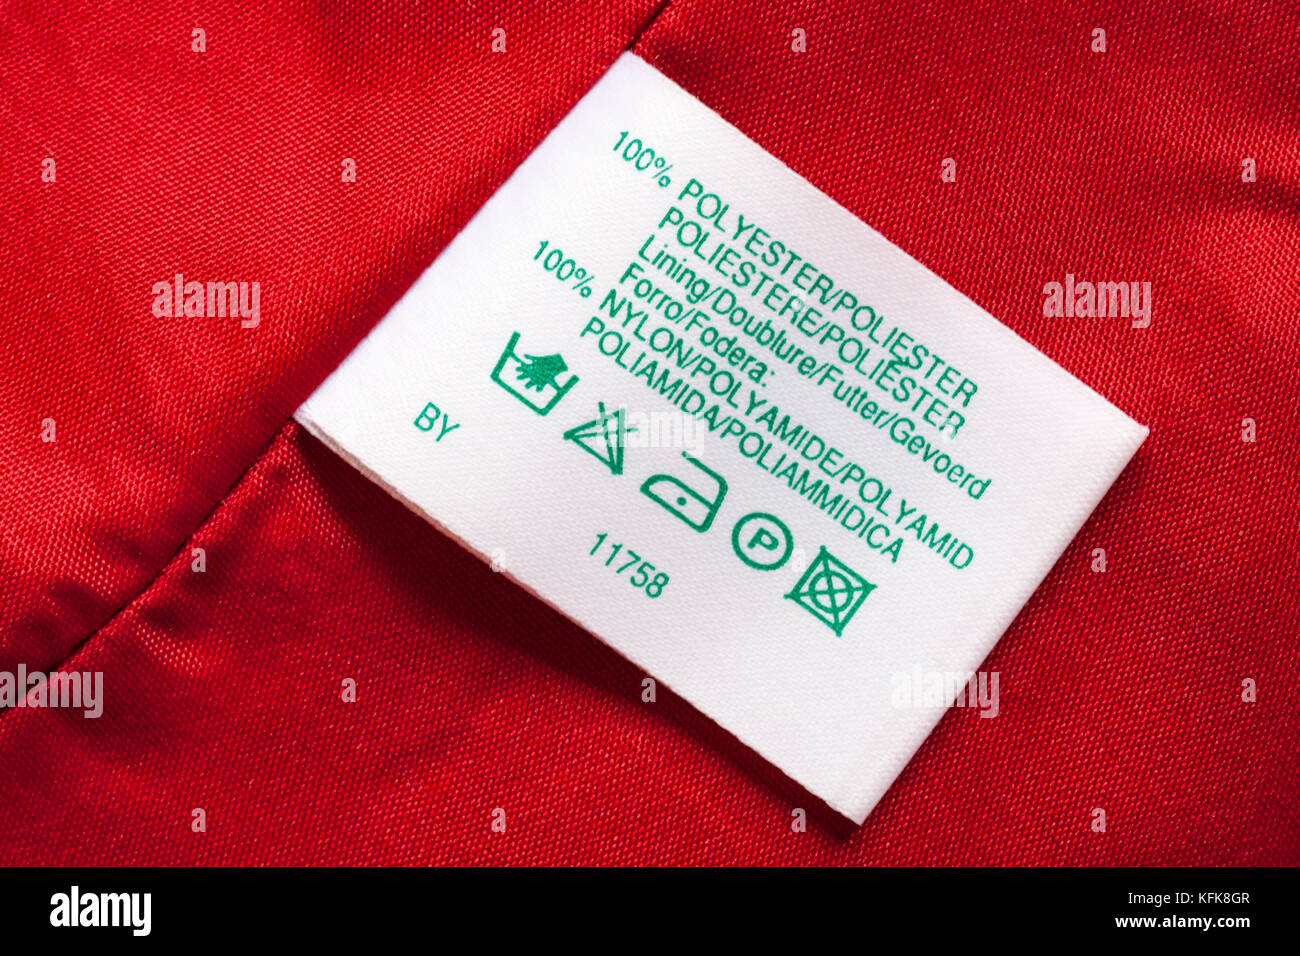 100% Polyester Innenfutter 100% Nylon Aufkleber in Rot Frau Kleidung mit  Waschen pflege Symbole Anweisungen in verschiedenen Sprachen  Stockfotografie - Alamy